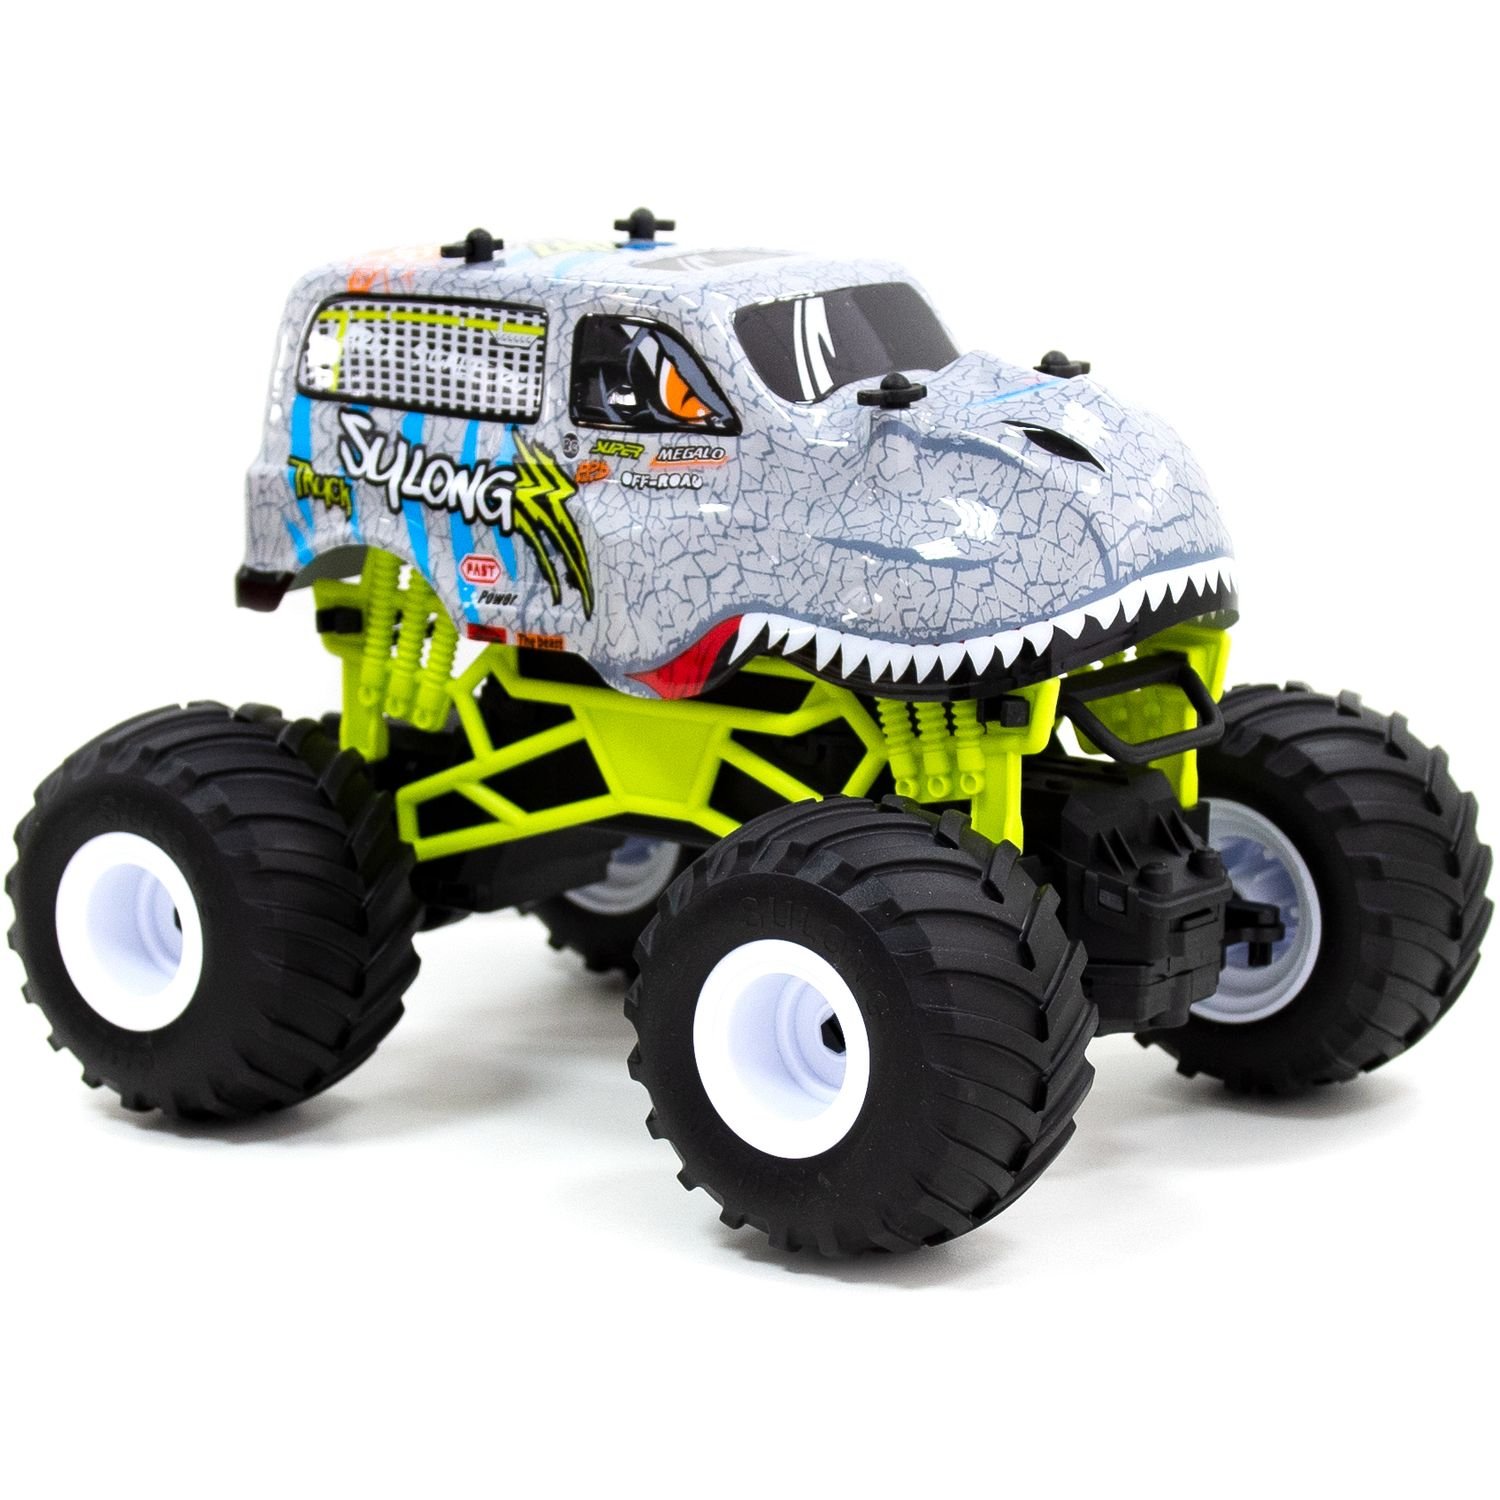 Автомобіль Sulong Toys на р/к Bigfoot Dinosaur 1:16, 27 МГц (SL-360RHGR) - фото 6